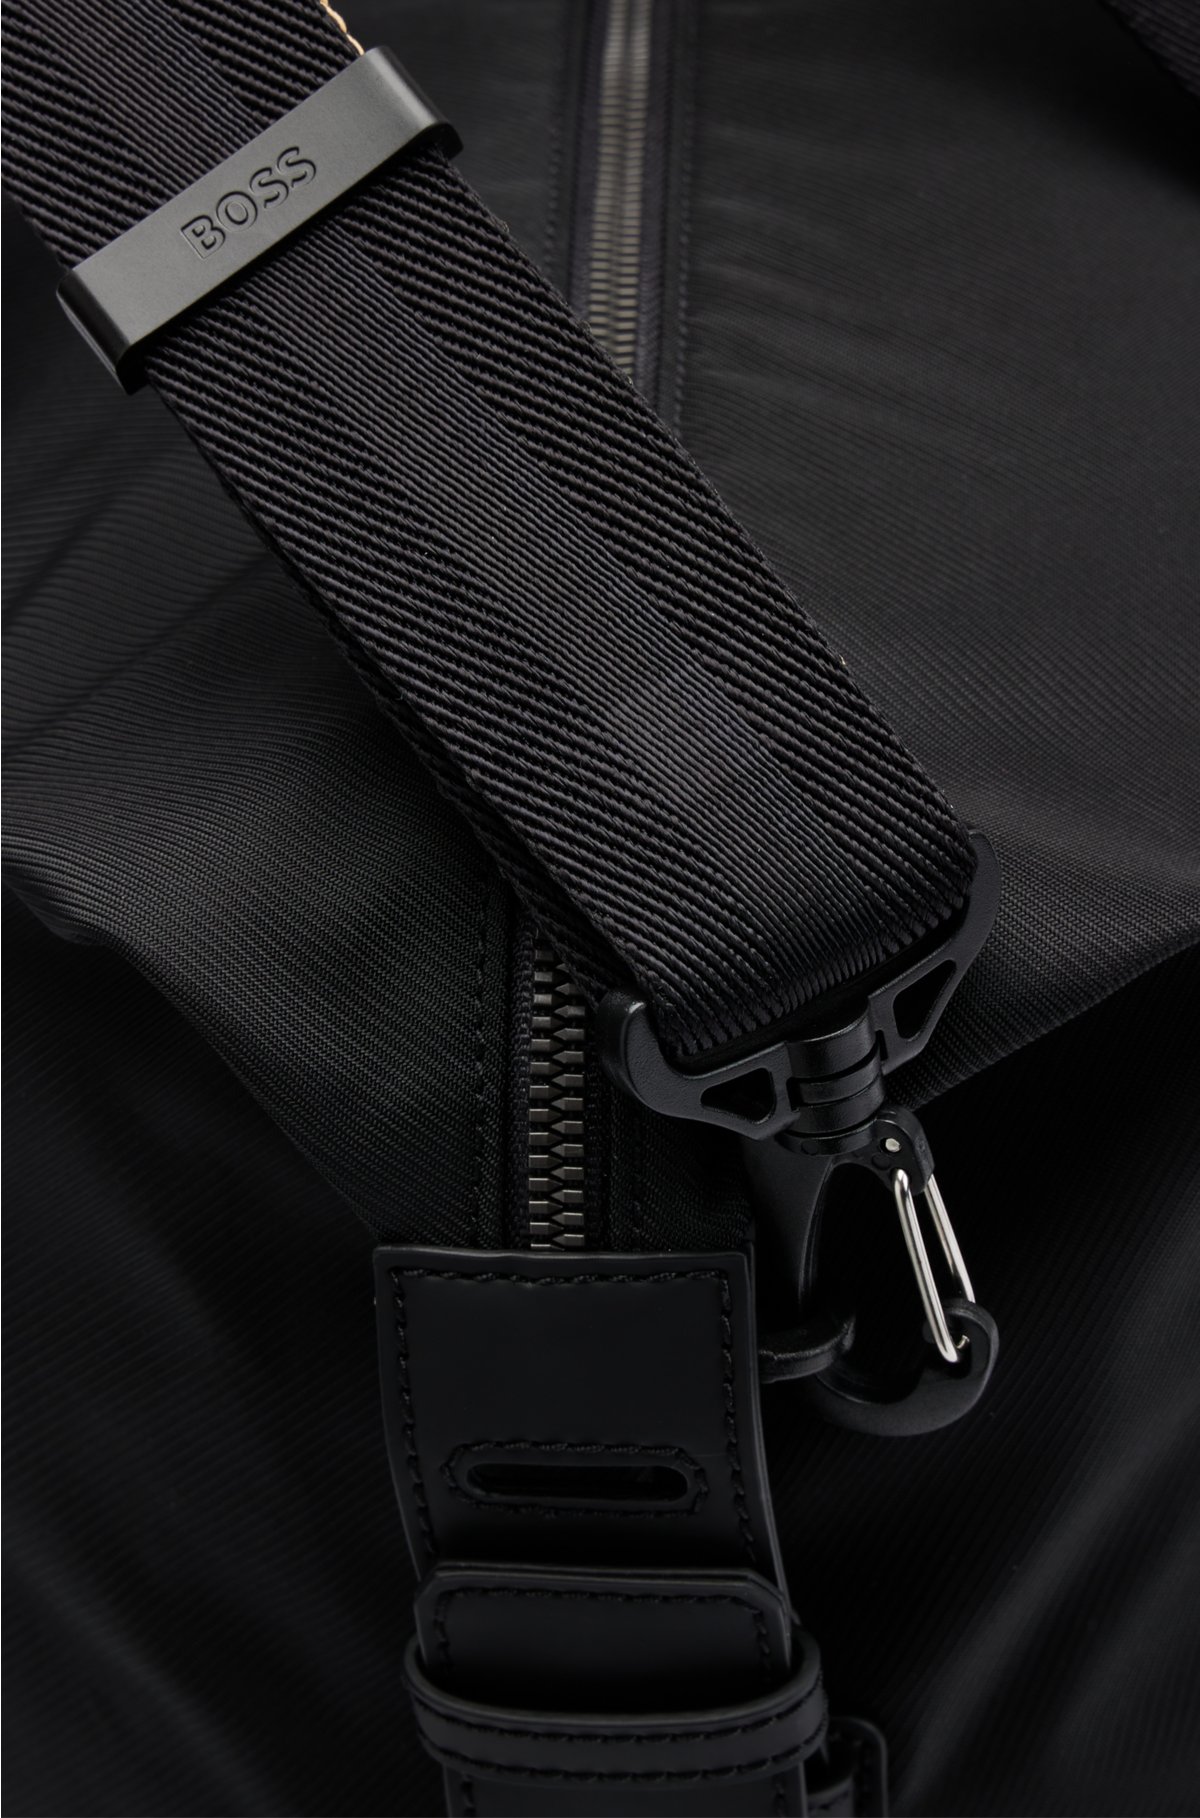 Comprar online asas de cuero negro para bolso con un largo de 52 cm.